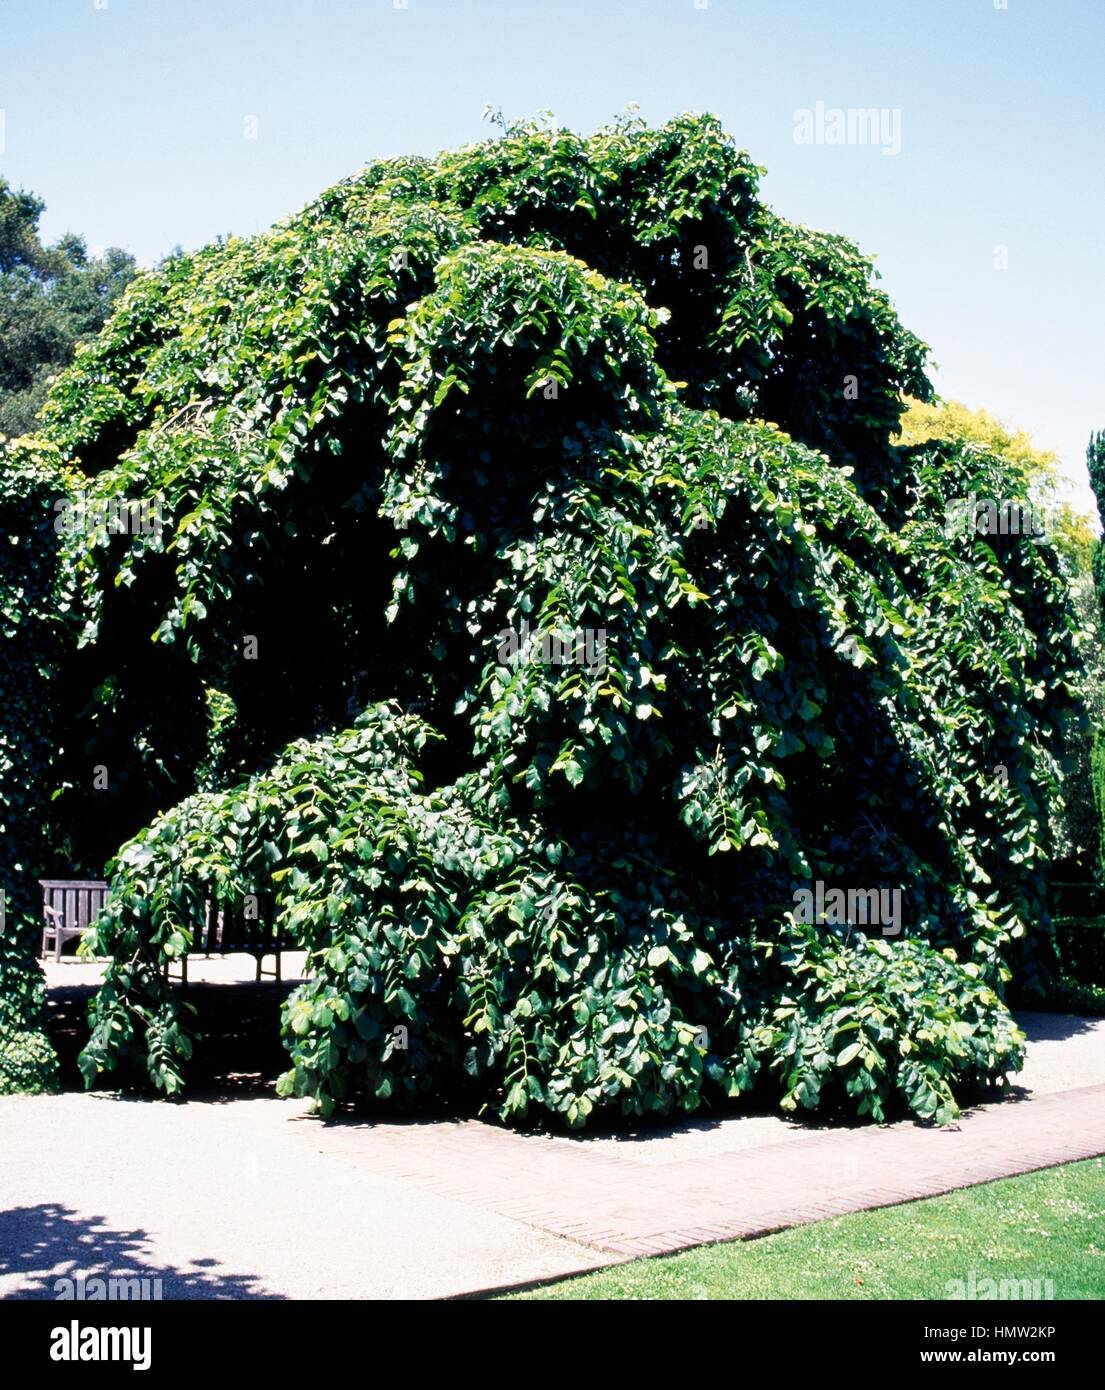 Camperdown Elm (Ulmus glabra Camperdownii), Ulmaceae. Stock Photo